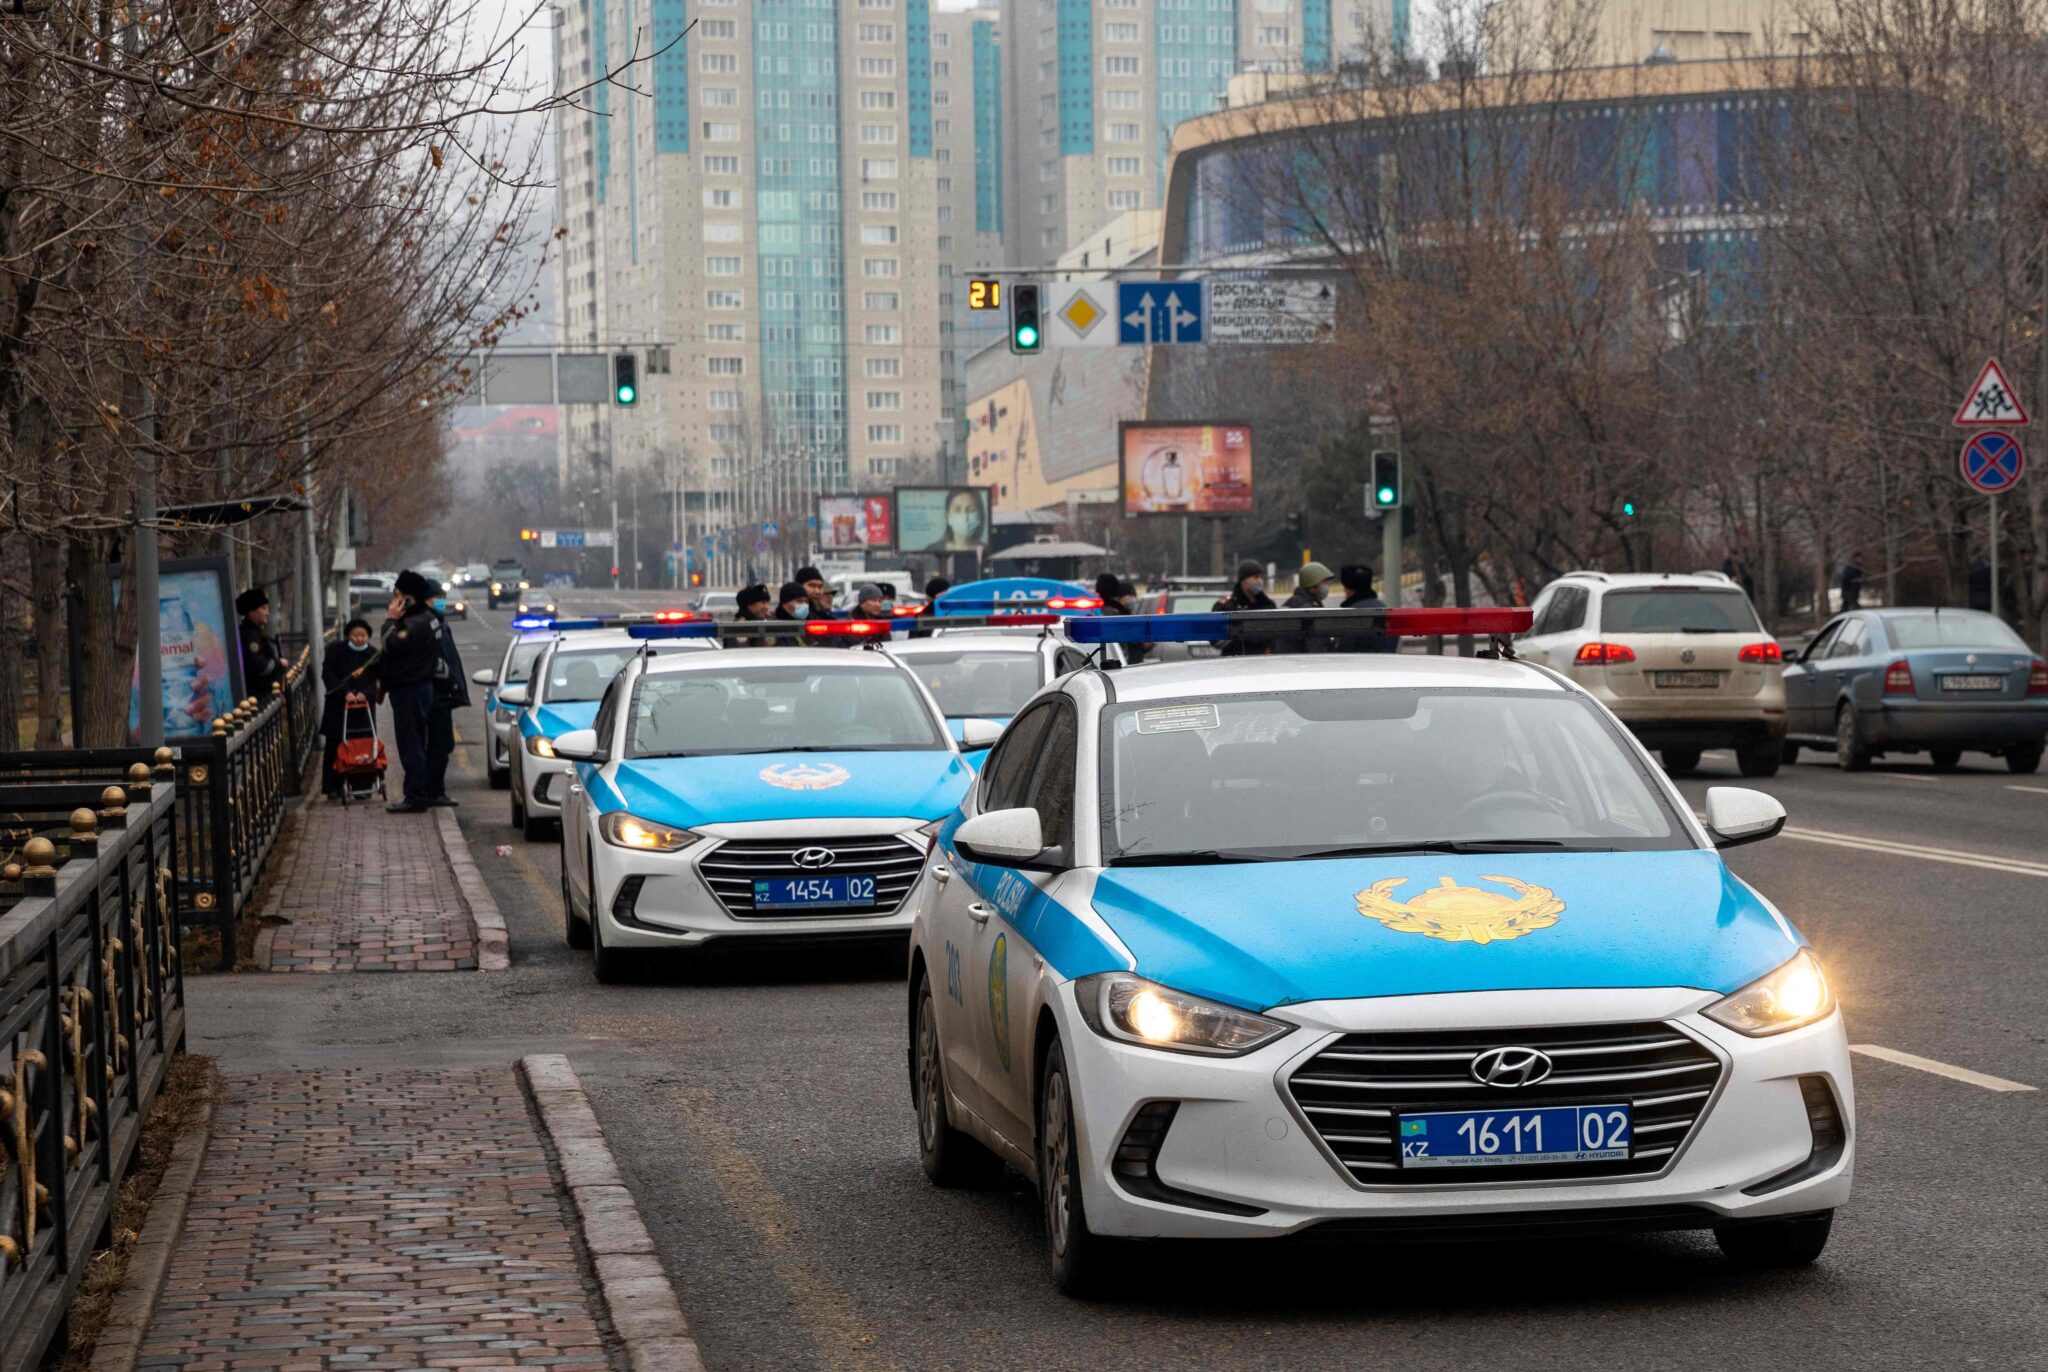 Полицейские автомобили блокируют улицу в центре Алматы. Фото   ALEXANDR BOGDANOV / TASS / Scanpix / Leta